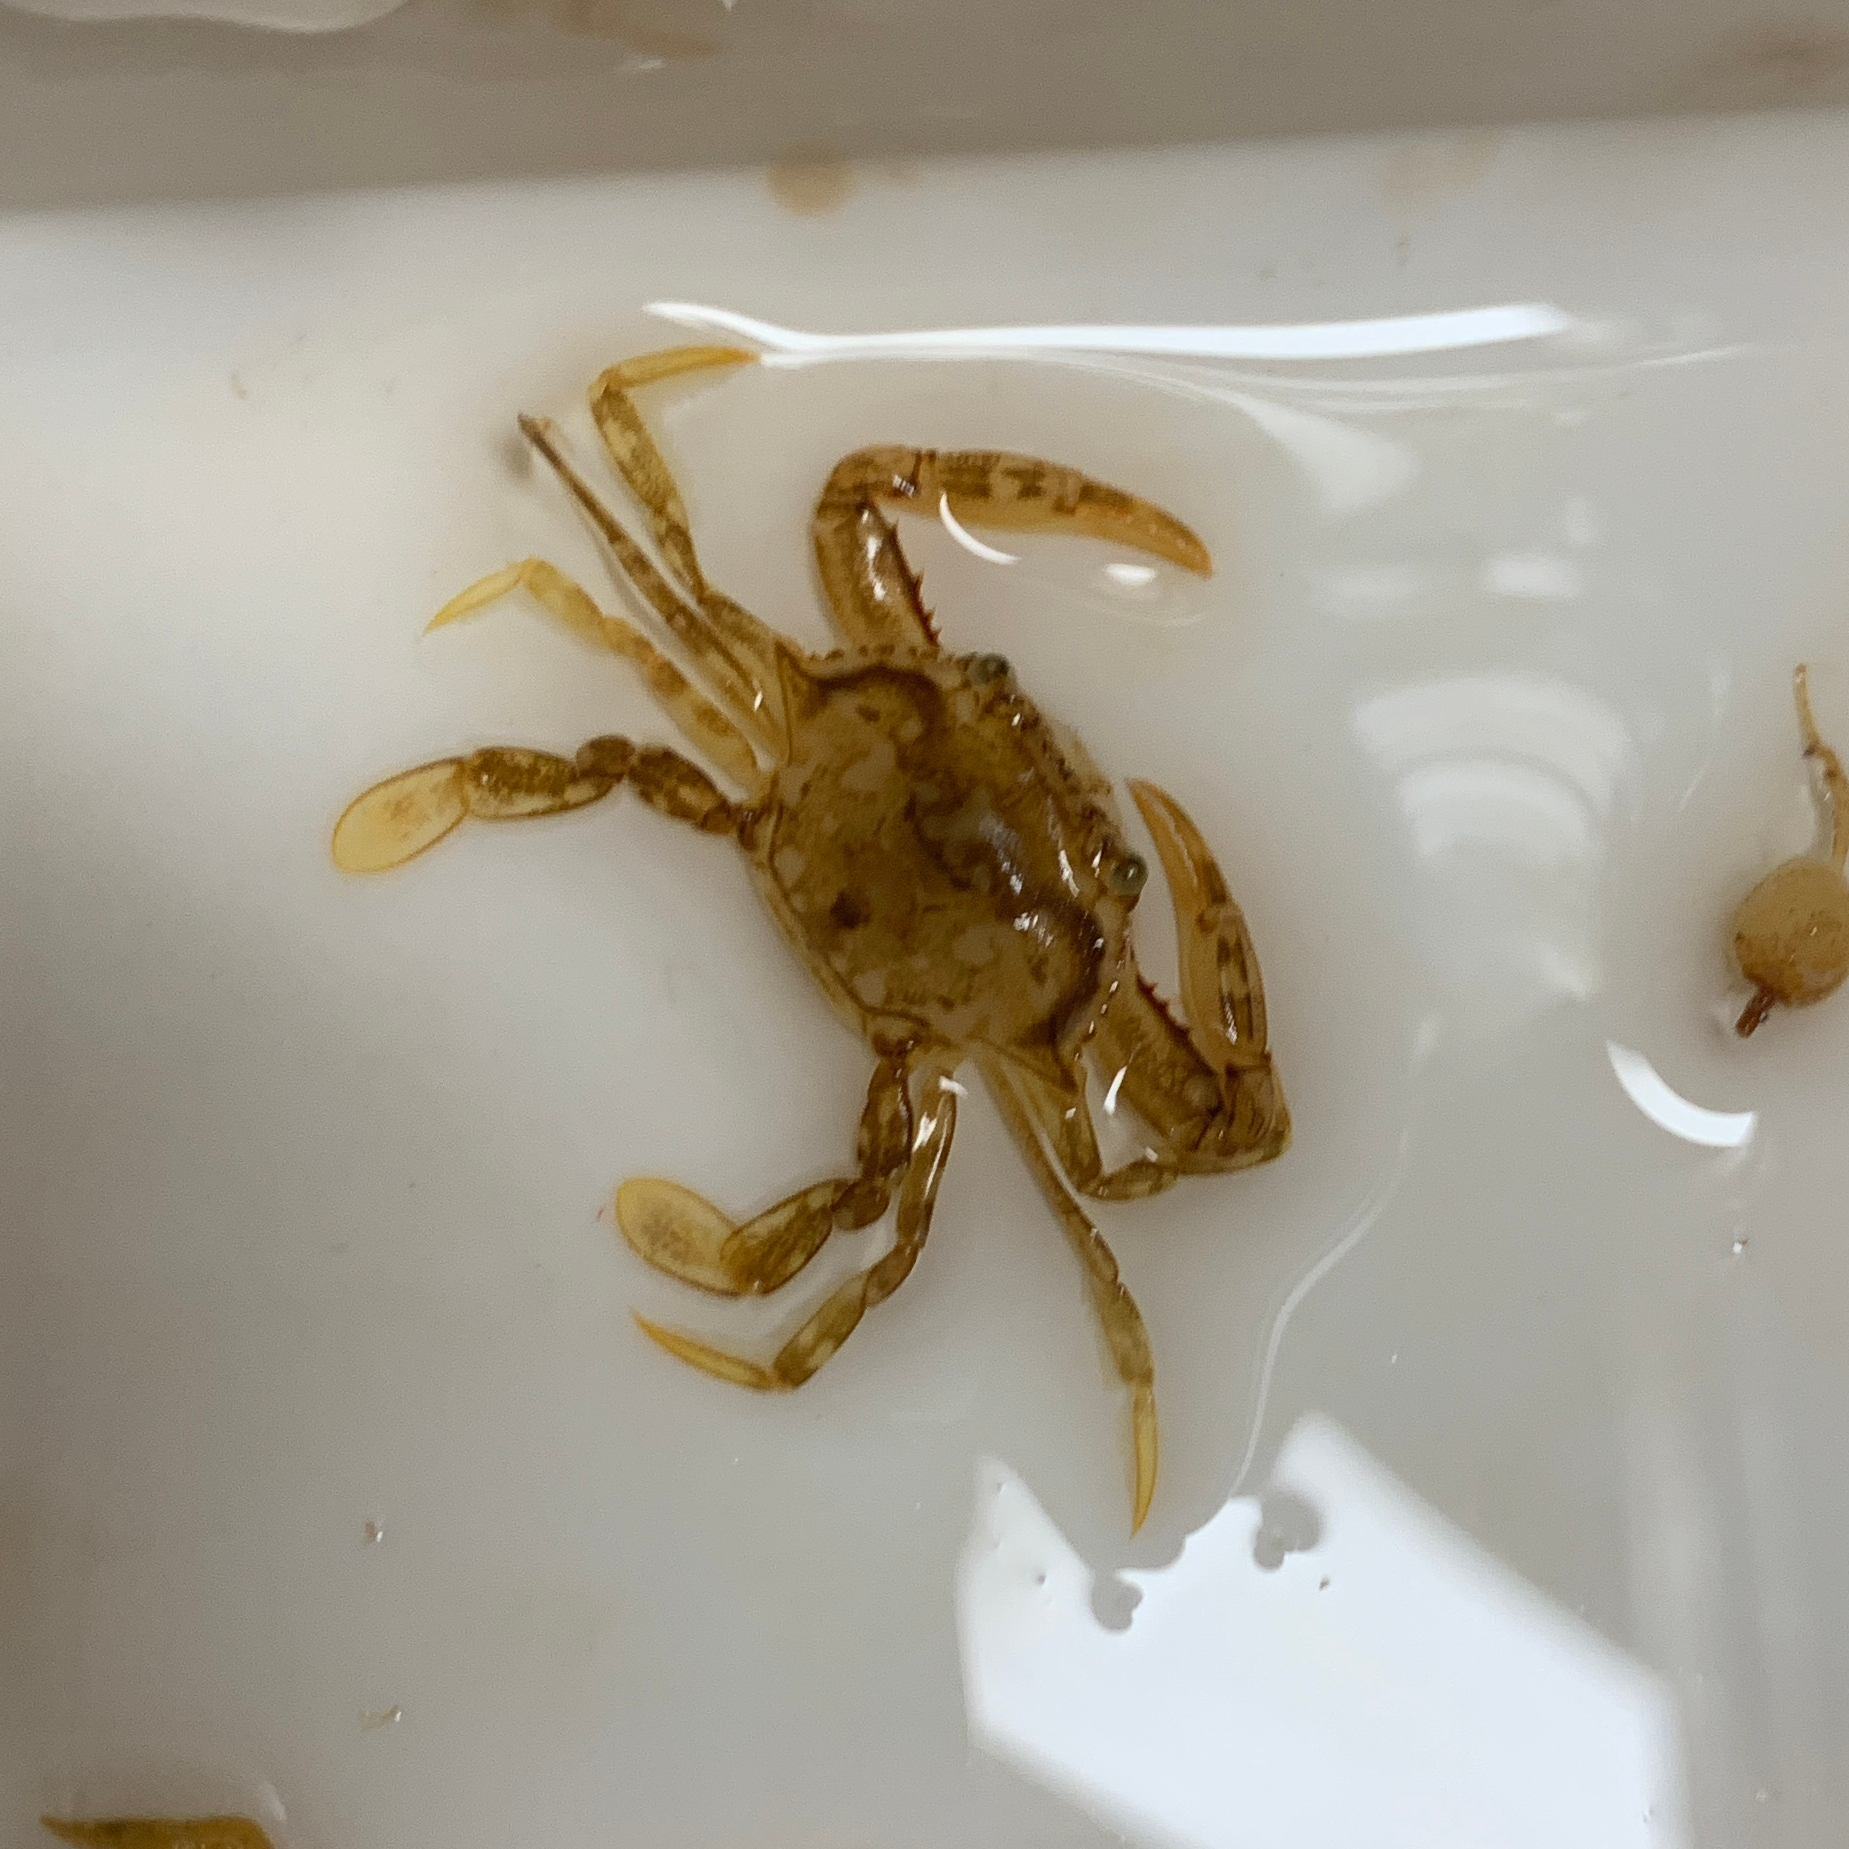 Small crab found in the Sargassum (Photo by Ellen Park).